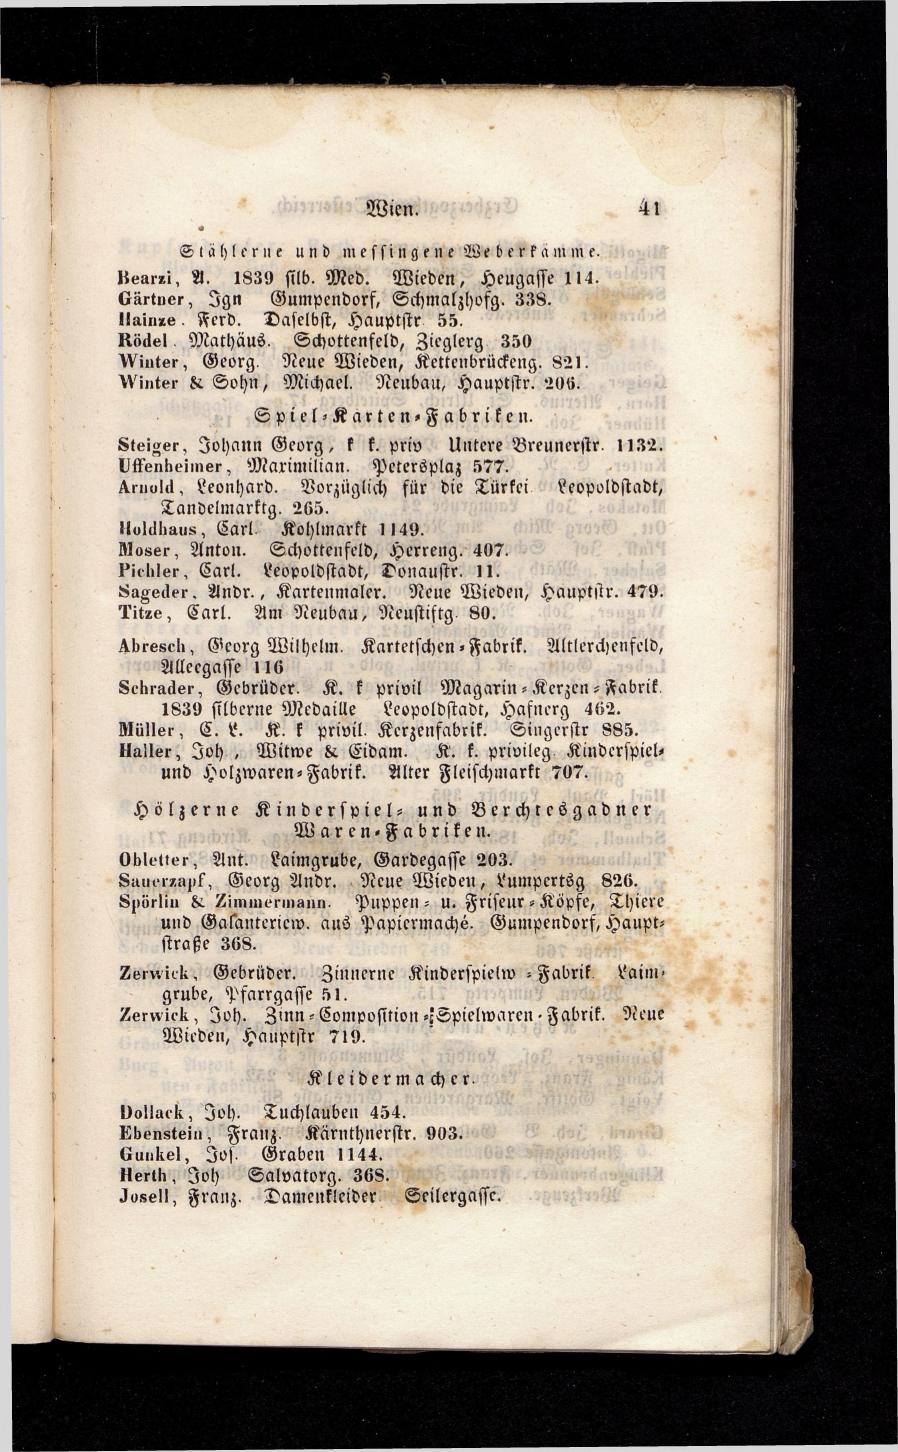 Grosses Adressbuch der Kaufleute. No. 13. Oesterreich ober u. unter der Enns 1844 - Seite 45